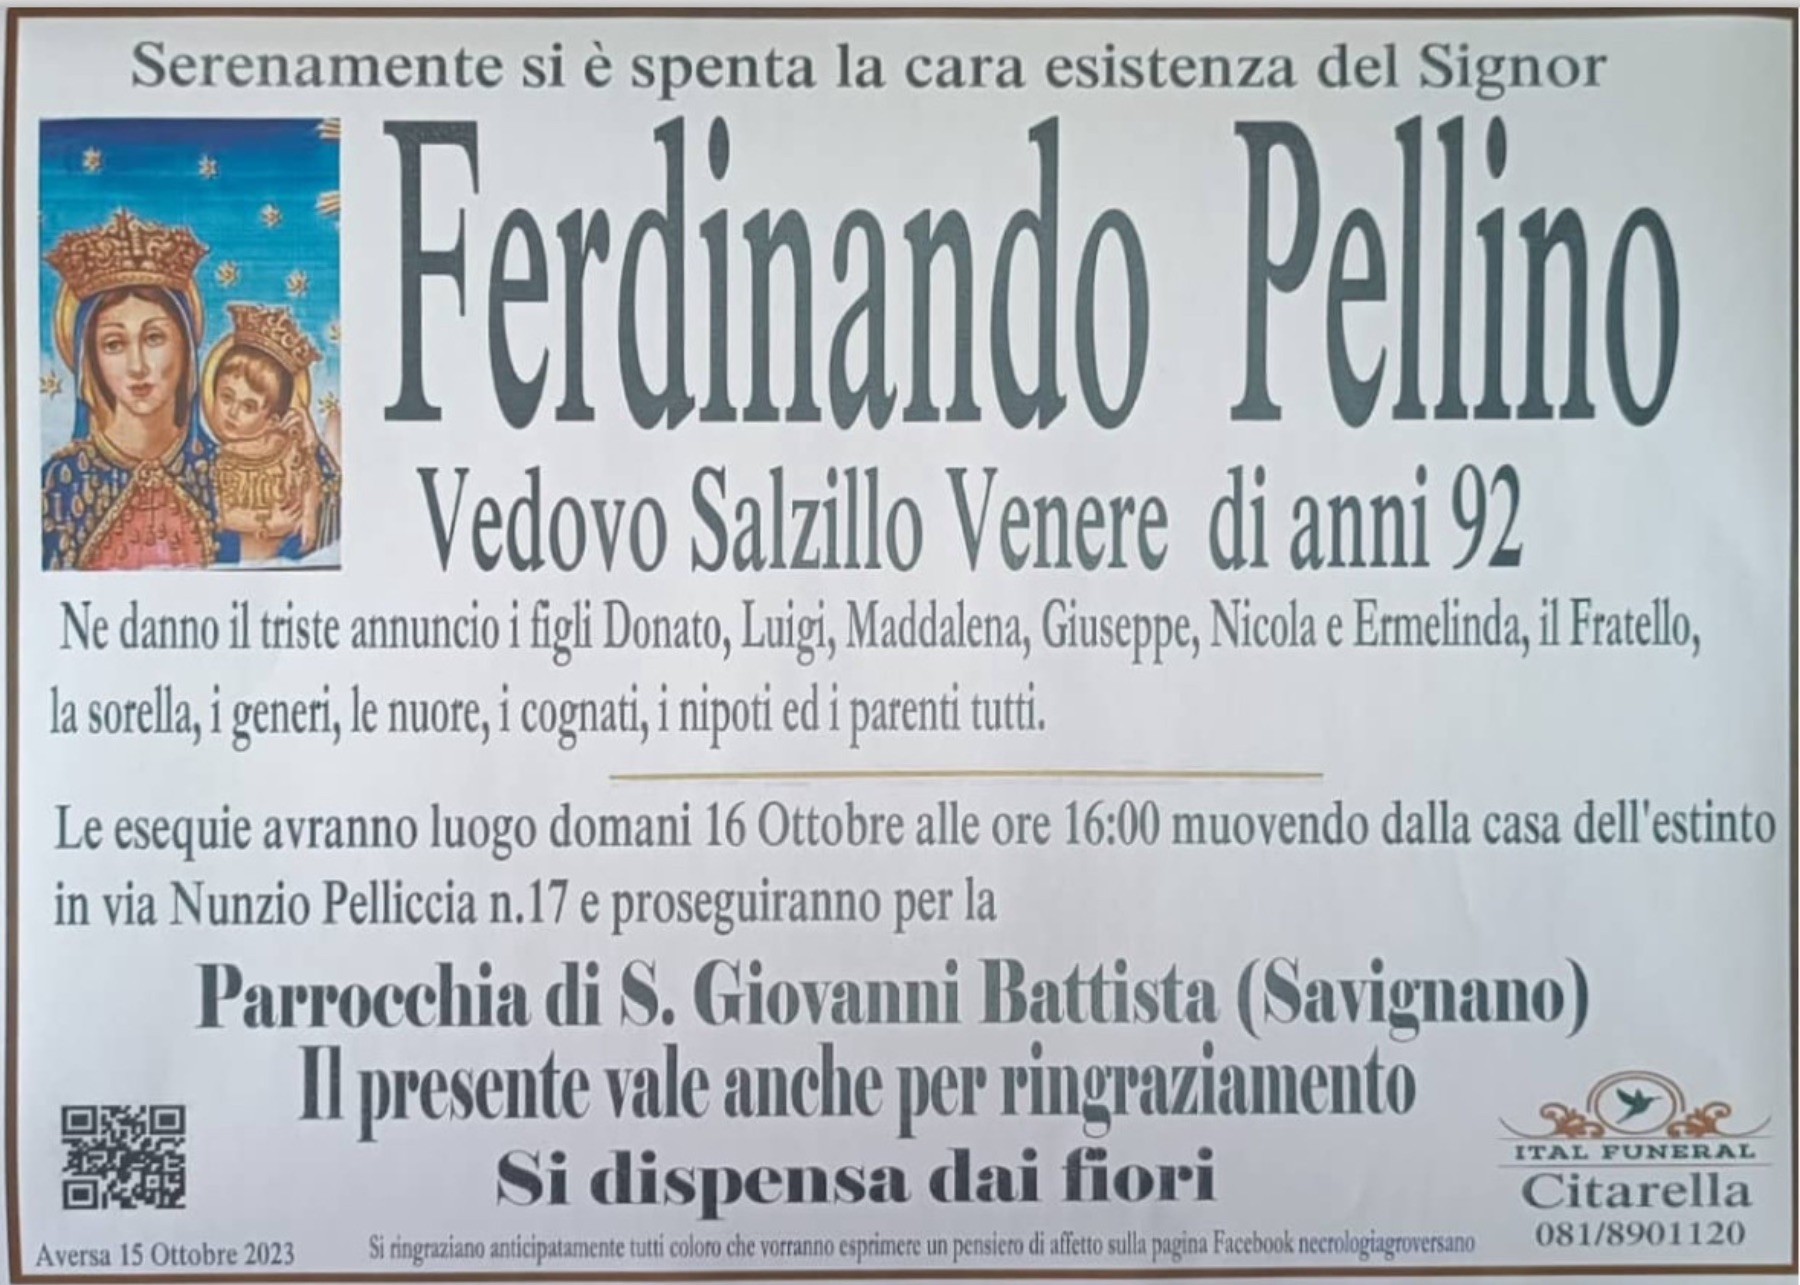 Ferdinando Pellino